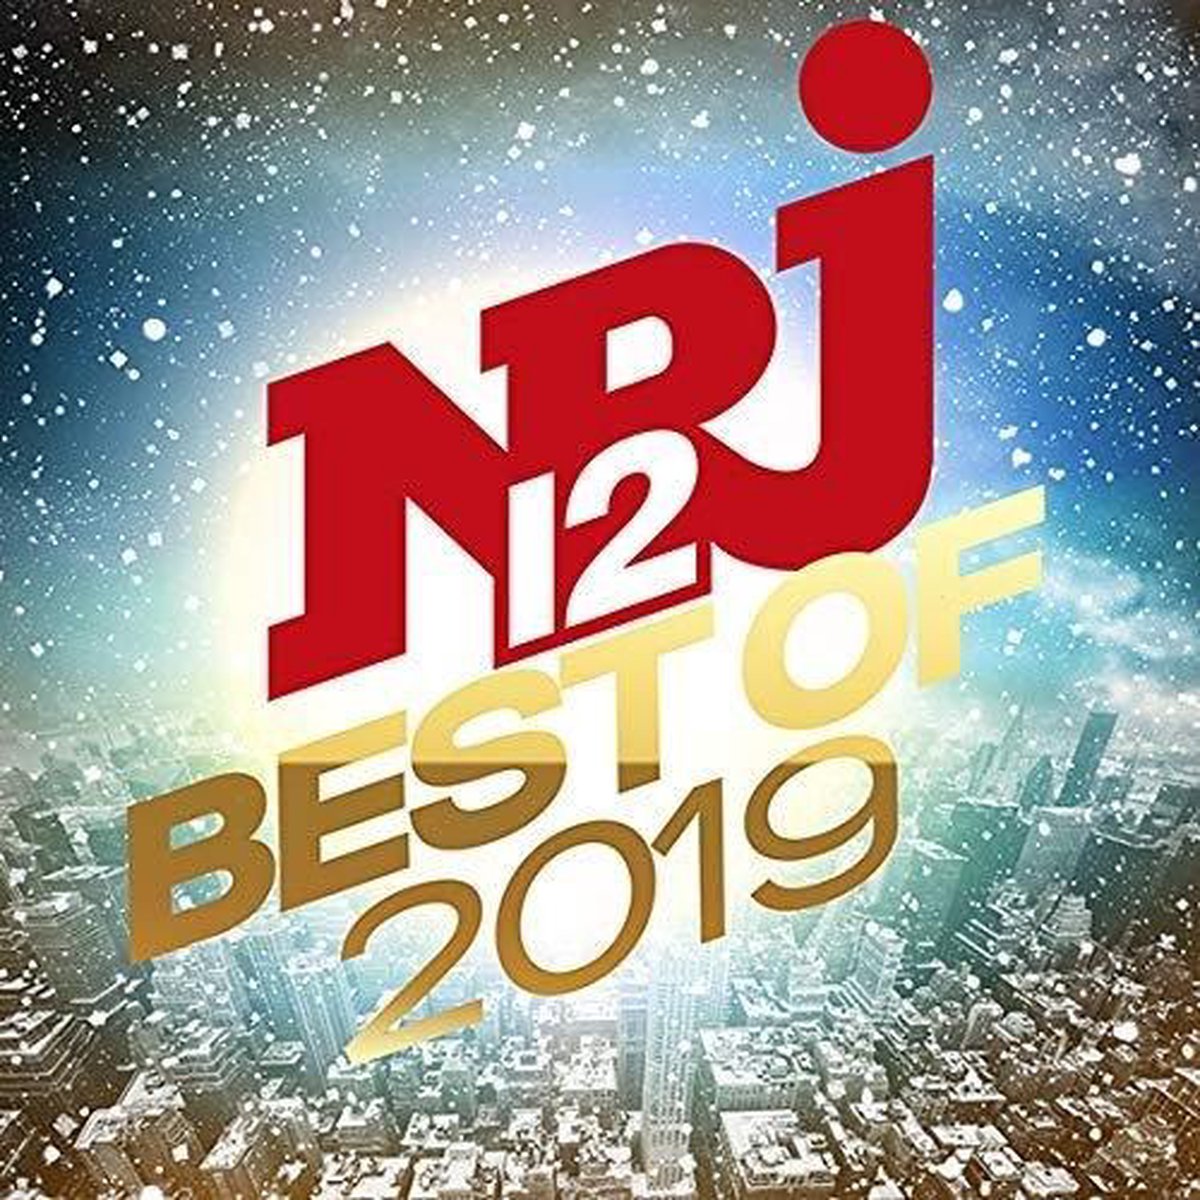 NRJ 12 Best Of 2019 - NRJ